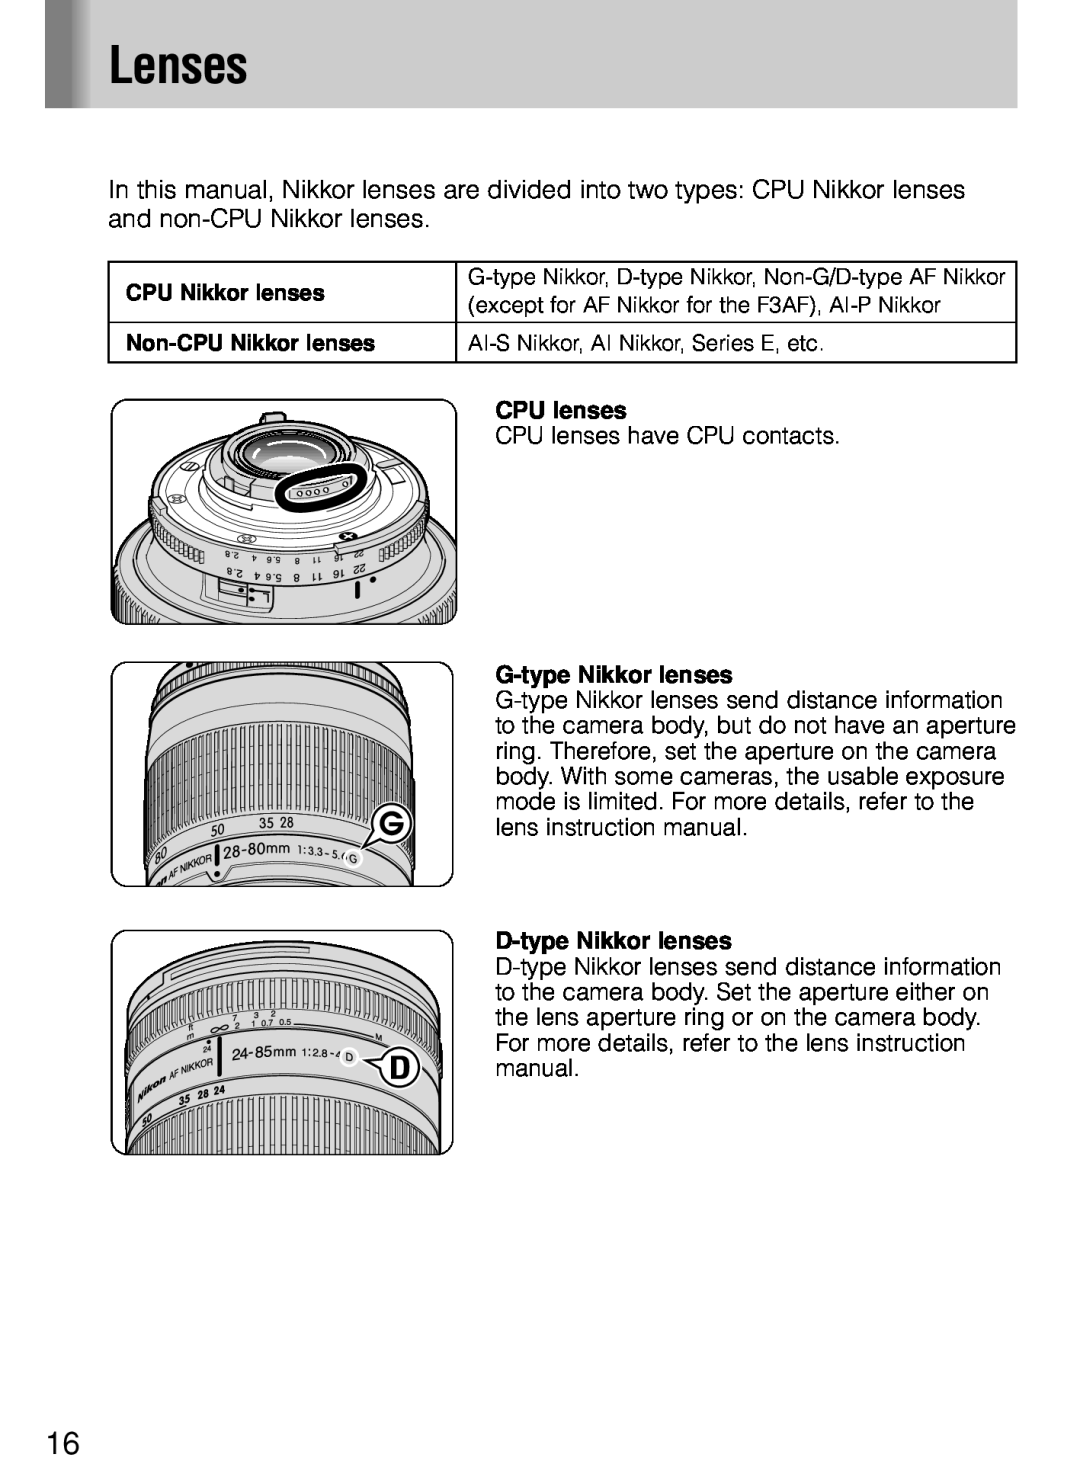 Nikon SB-800 instruction manual Lenses, CPU lenses, G-type Nikkor lenses, D-type Nikkor lenses 